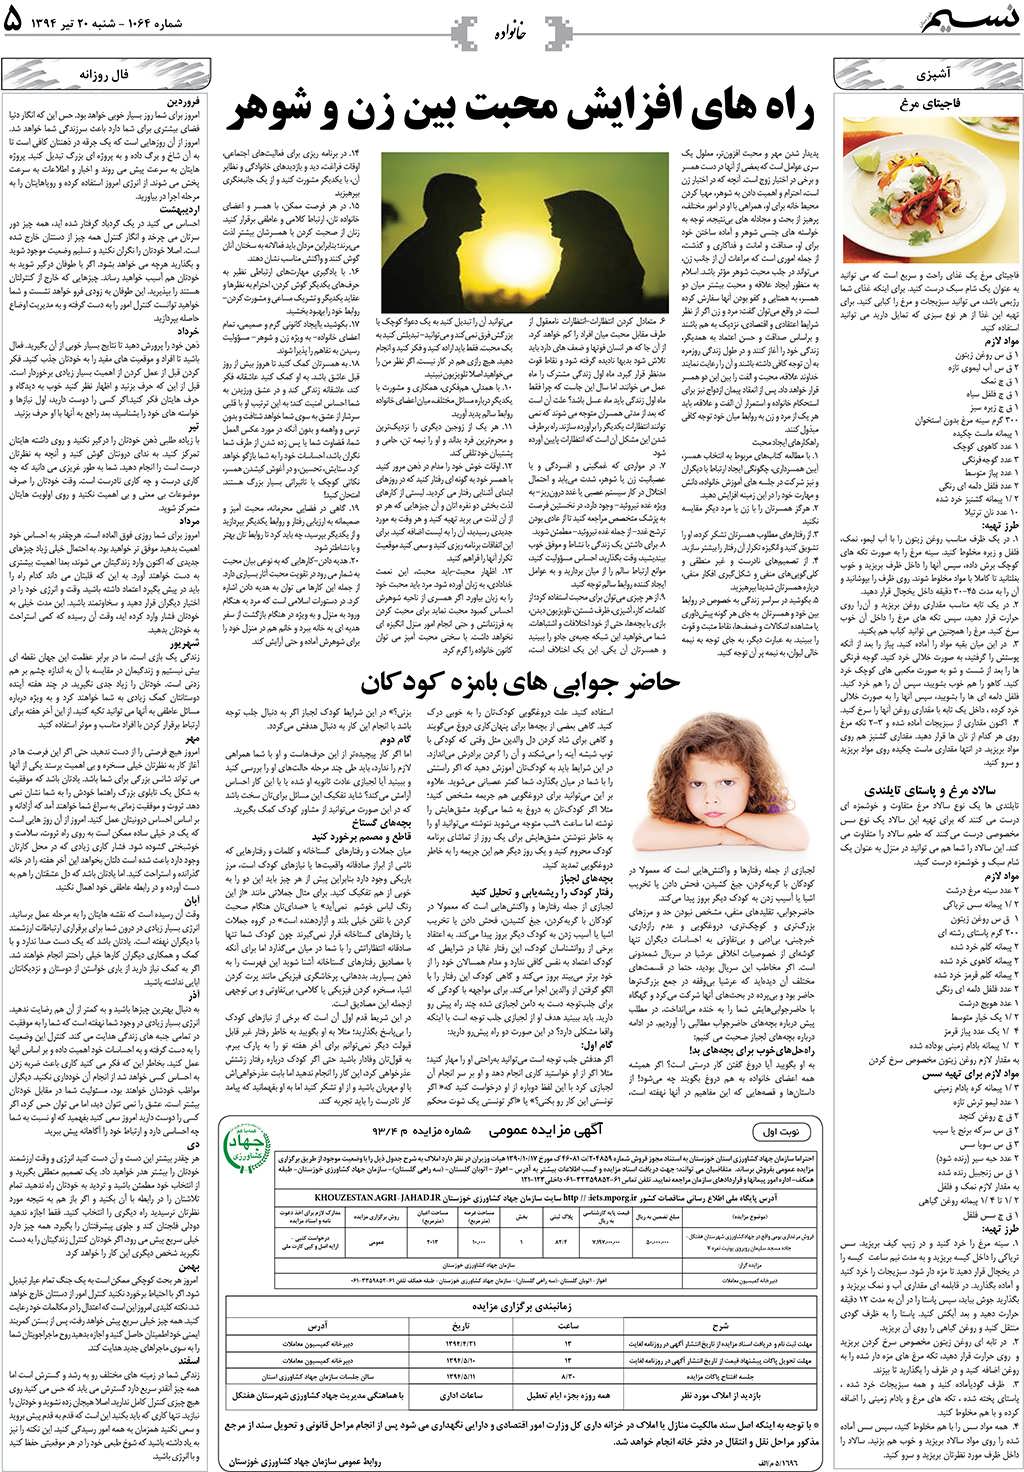 صفحه خانواده روزنامه نسیم شماره 1064